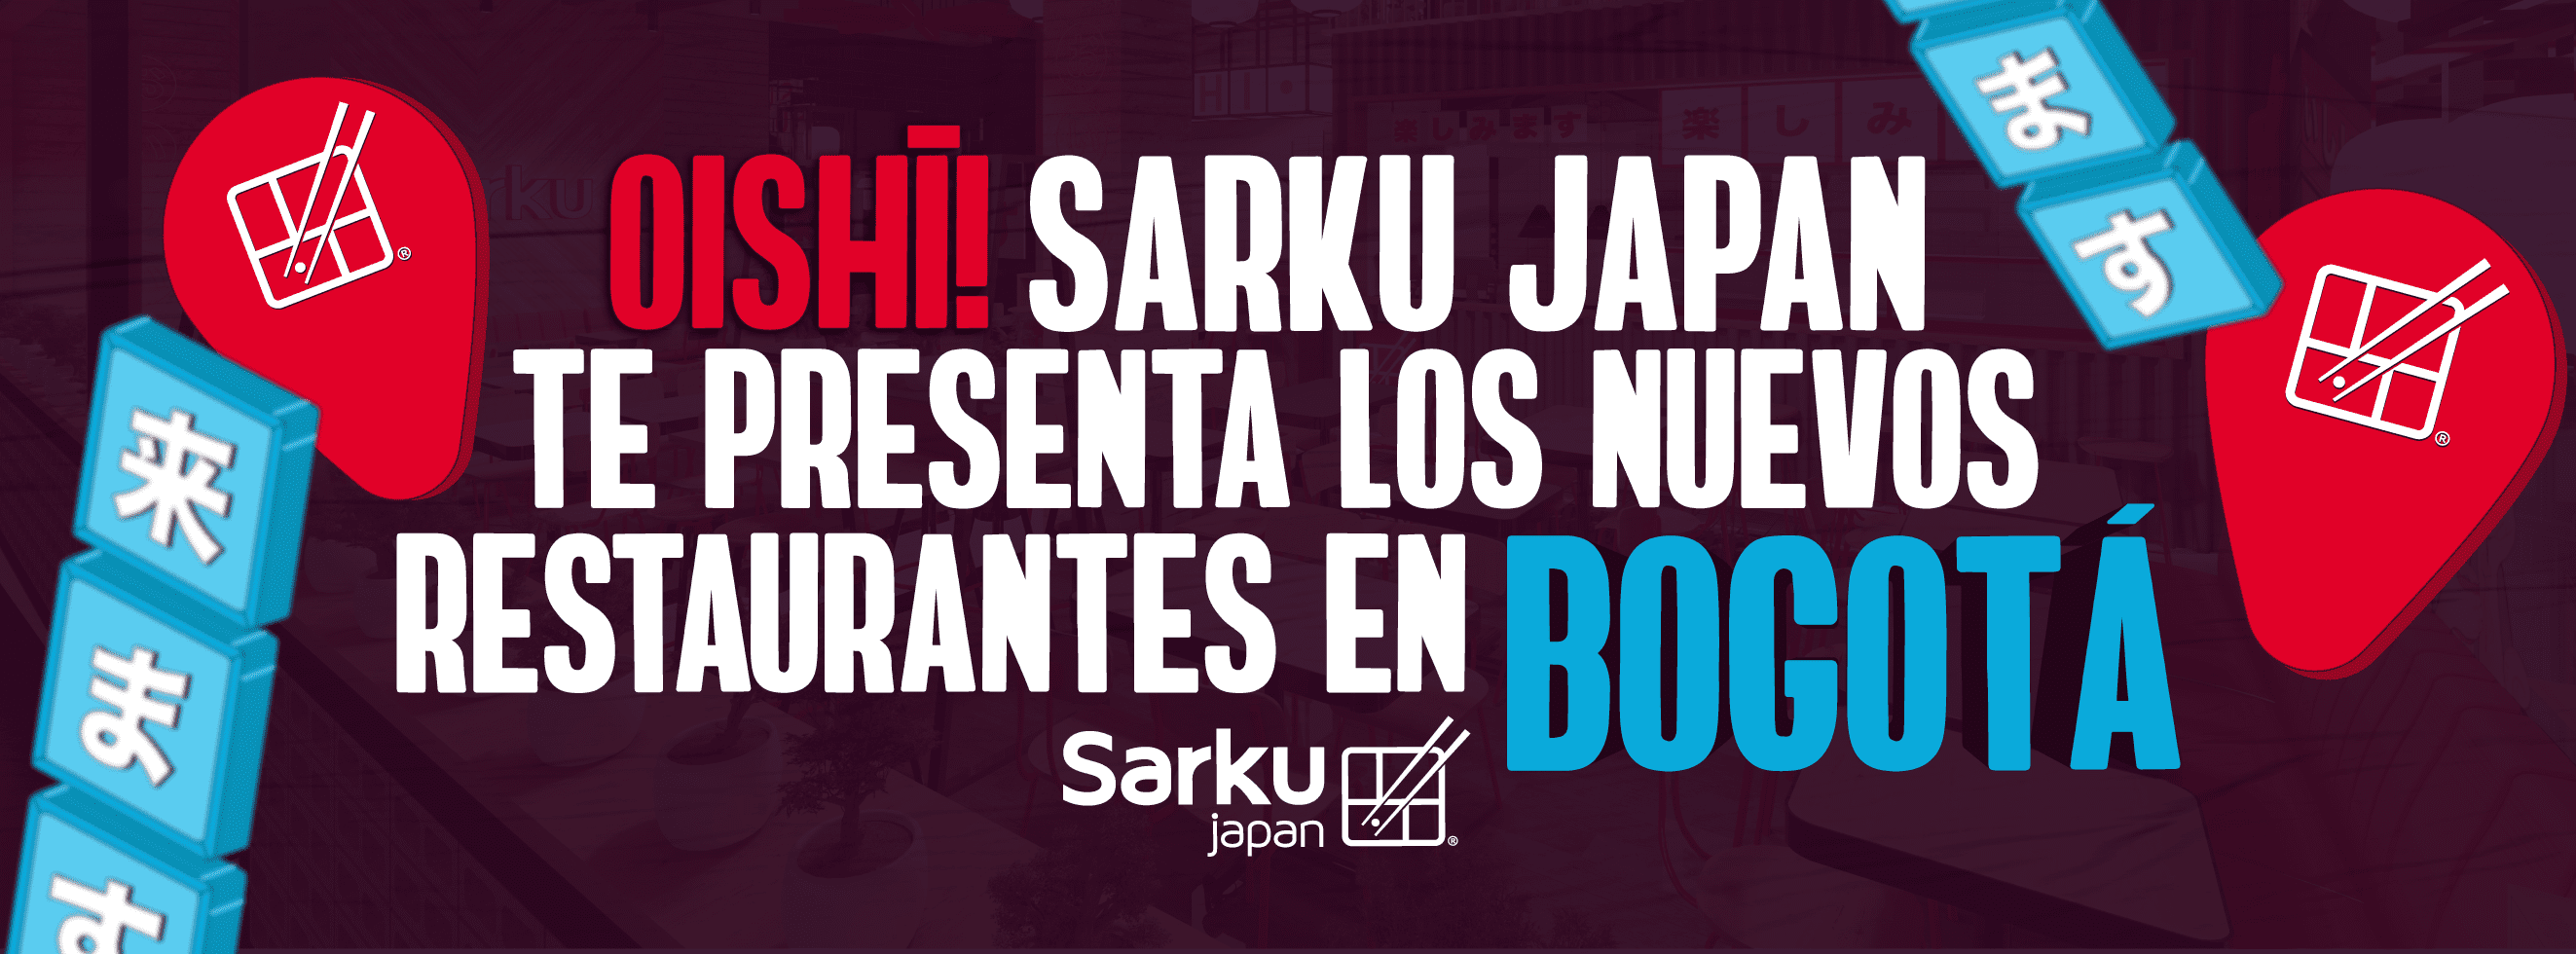 Oishì! Sarku Japan te presenta los nuevos restaurantes en Bogotá